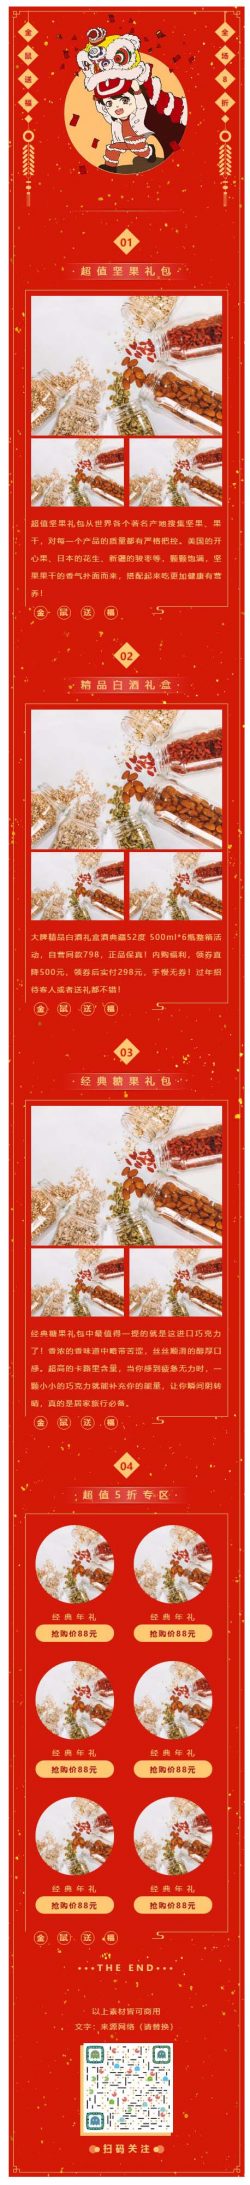 鼠年红色动态背景新春新年春节微信公众平台模板微信推送图文素材